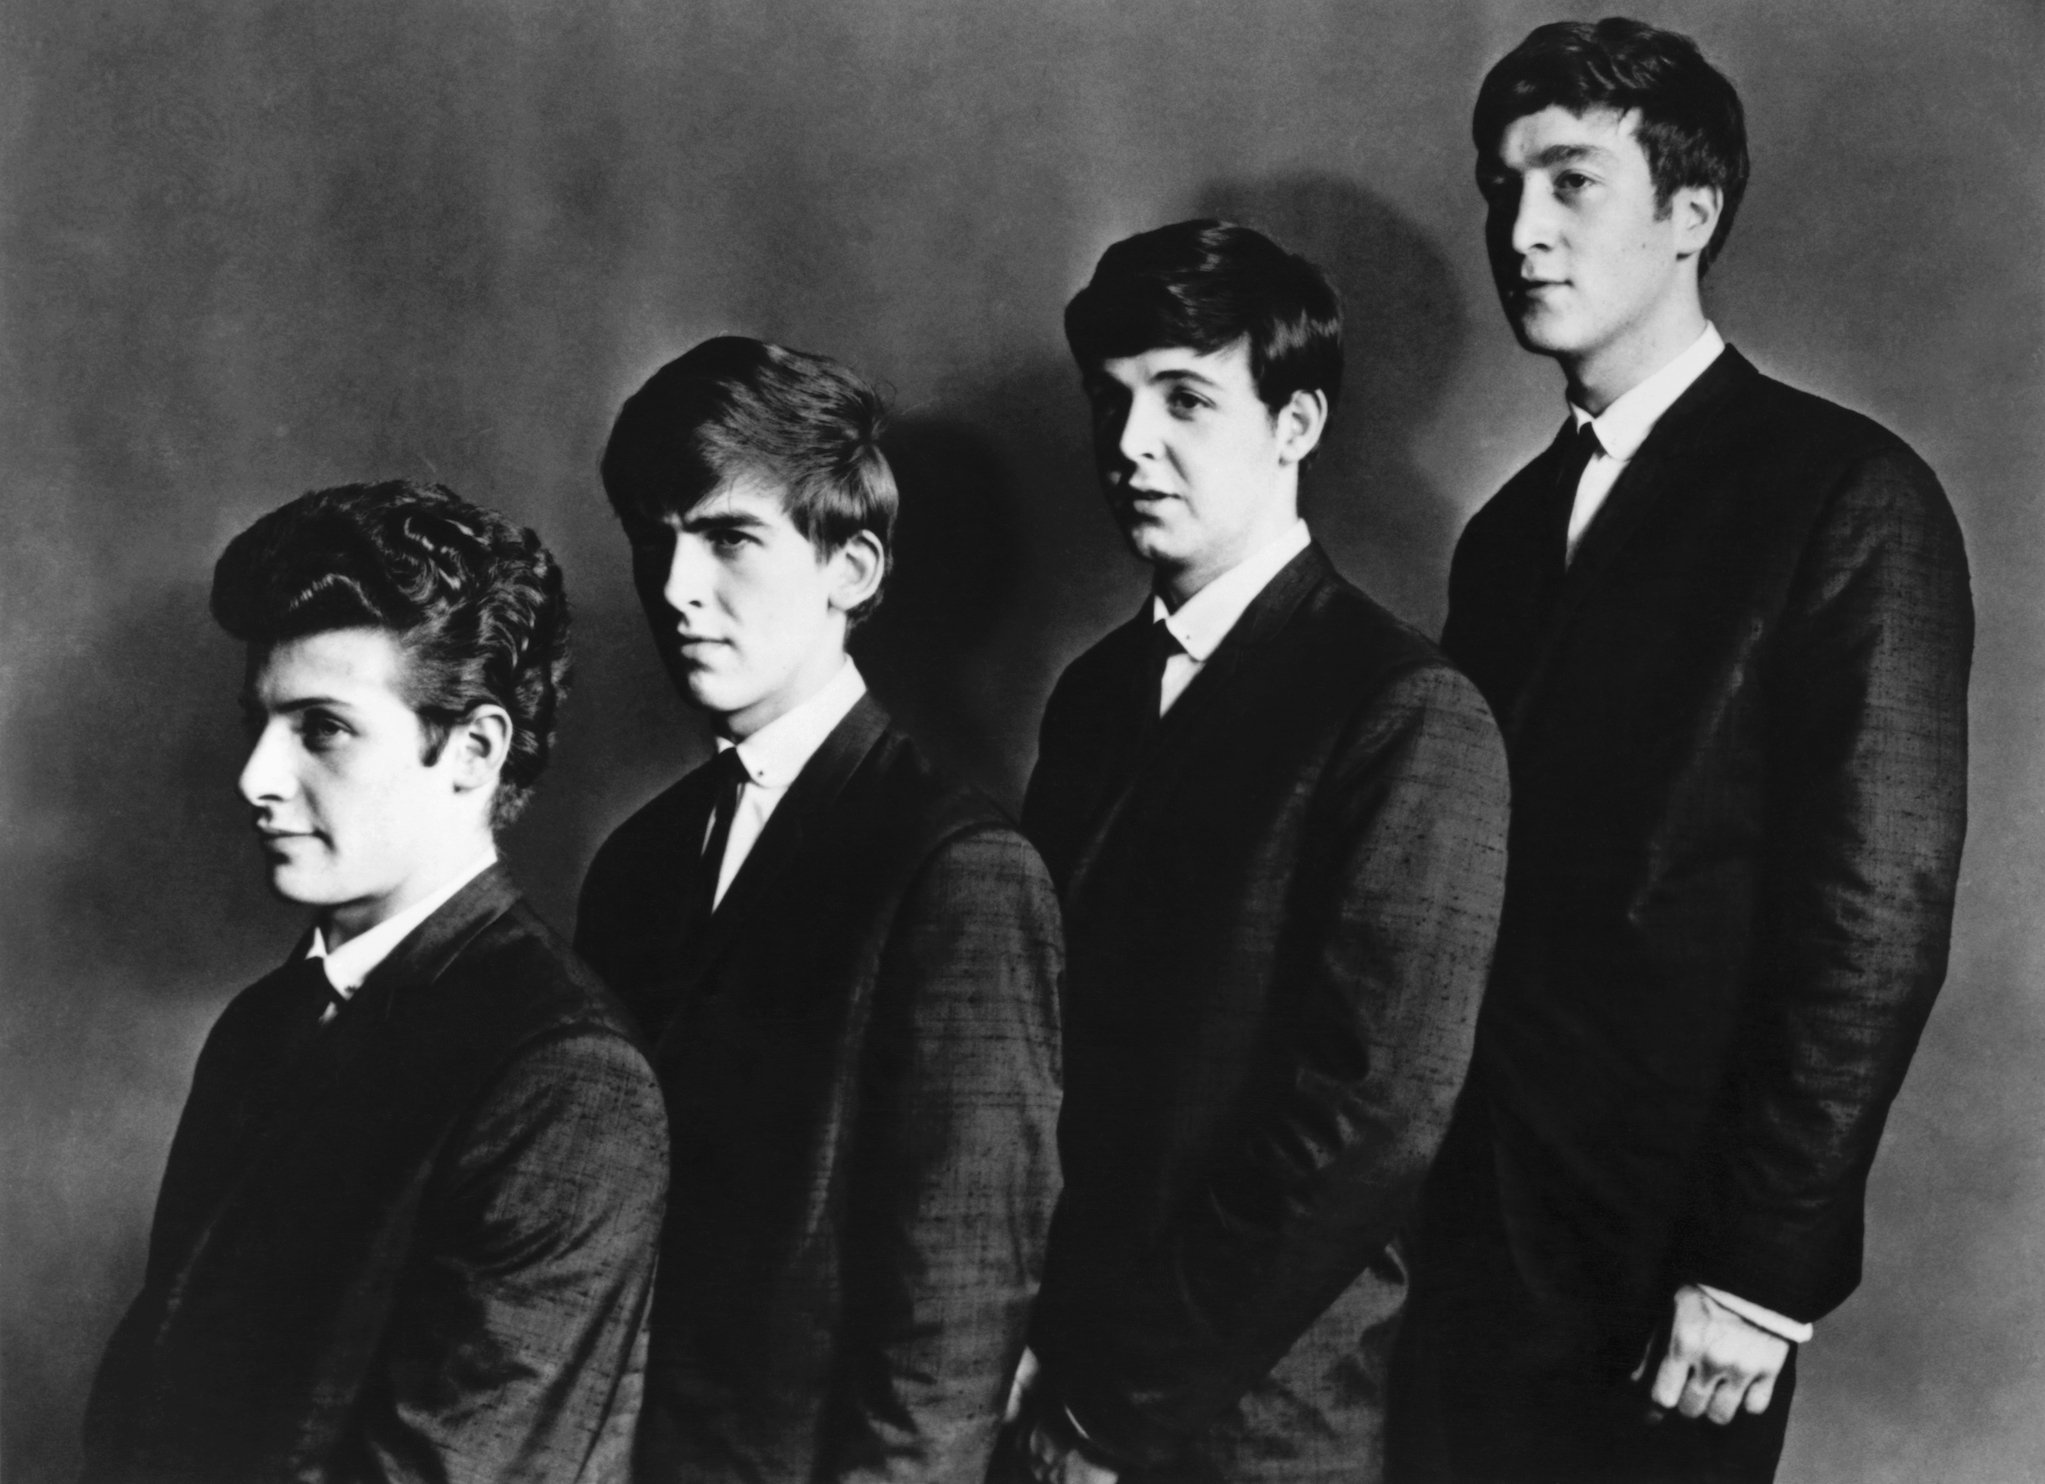 The Beatles in an early portrait (Pete Best, George Harrison, Paul McCartney, and John Lennon)